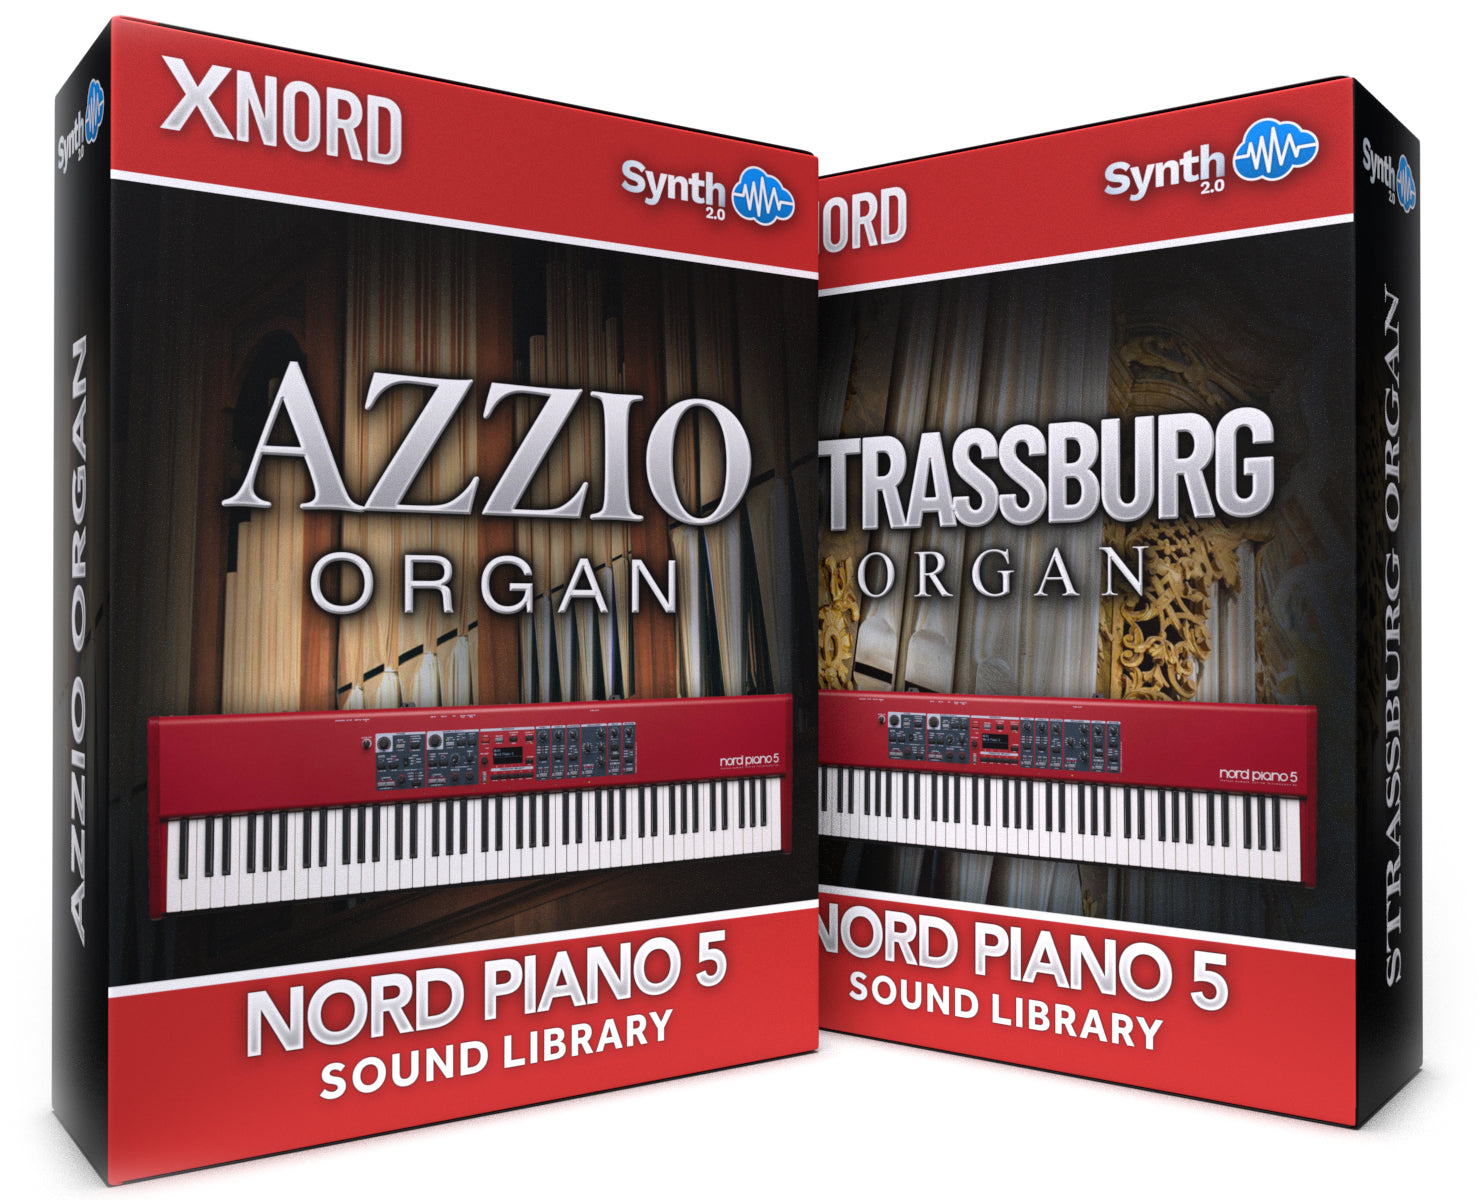 RCL010 - ( Bundle ) - Strassburg Organ + Azzio Organ - Nord Piano 5